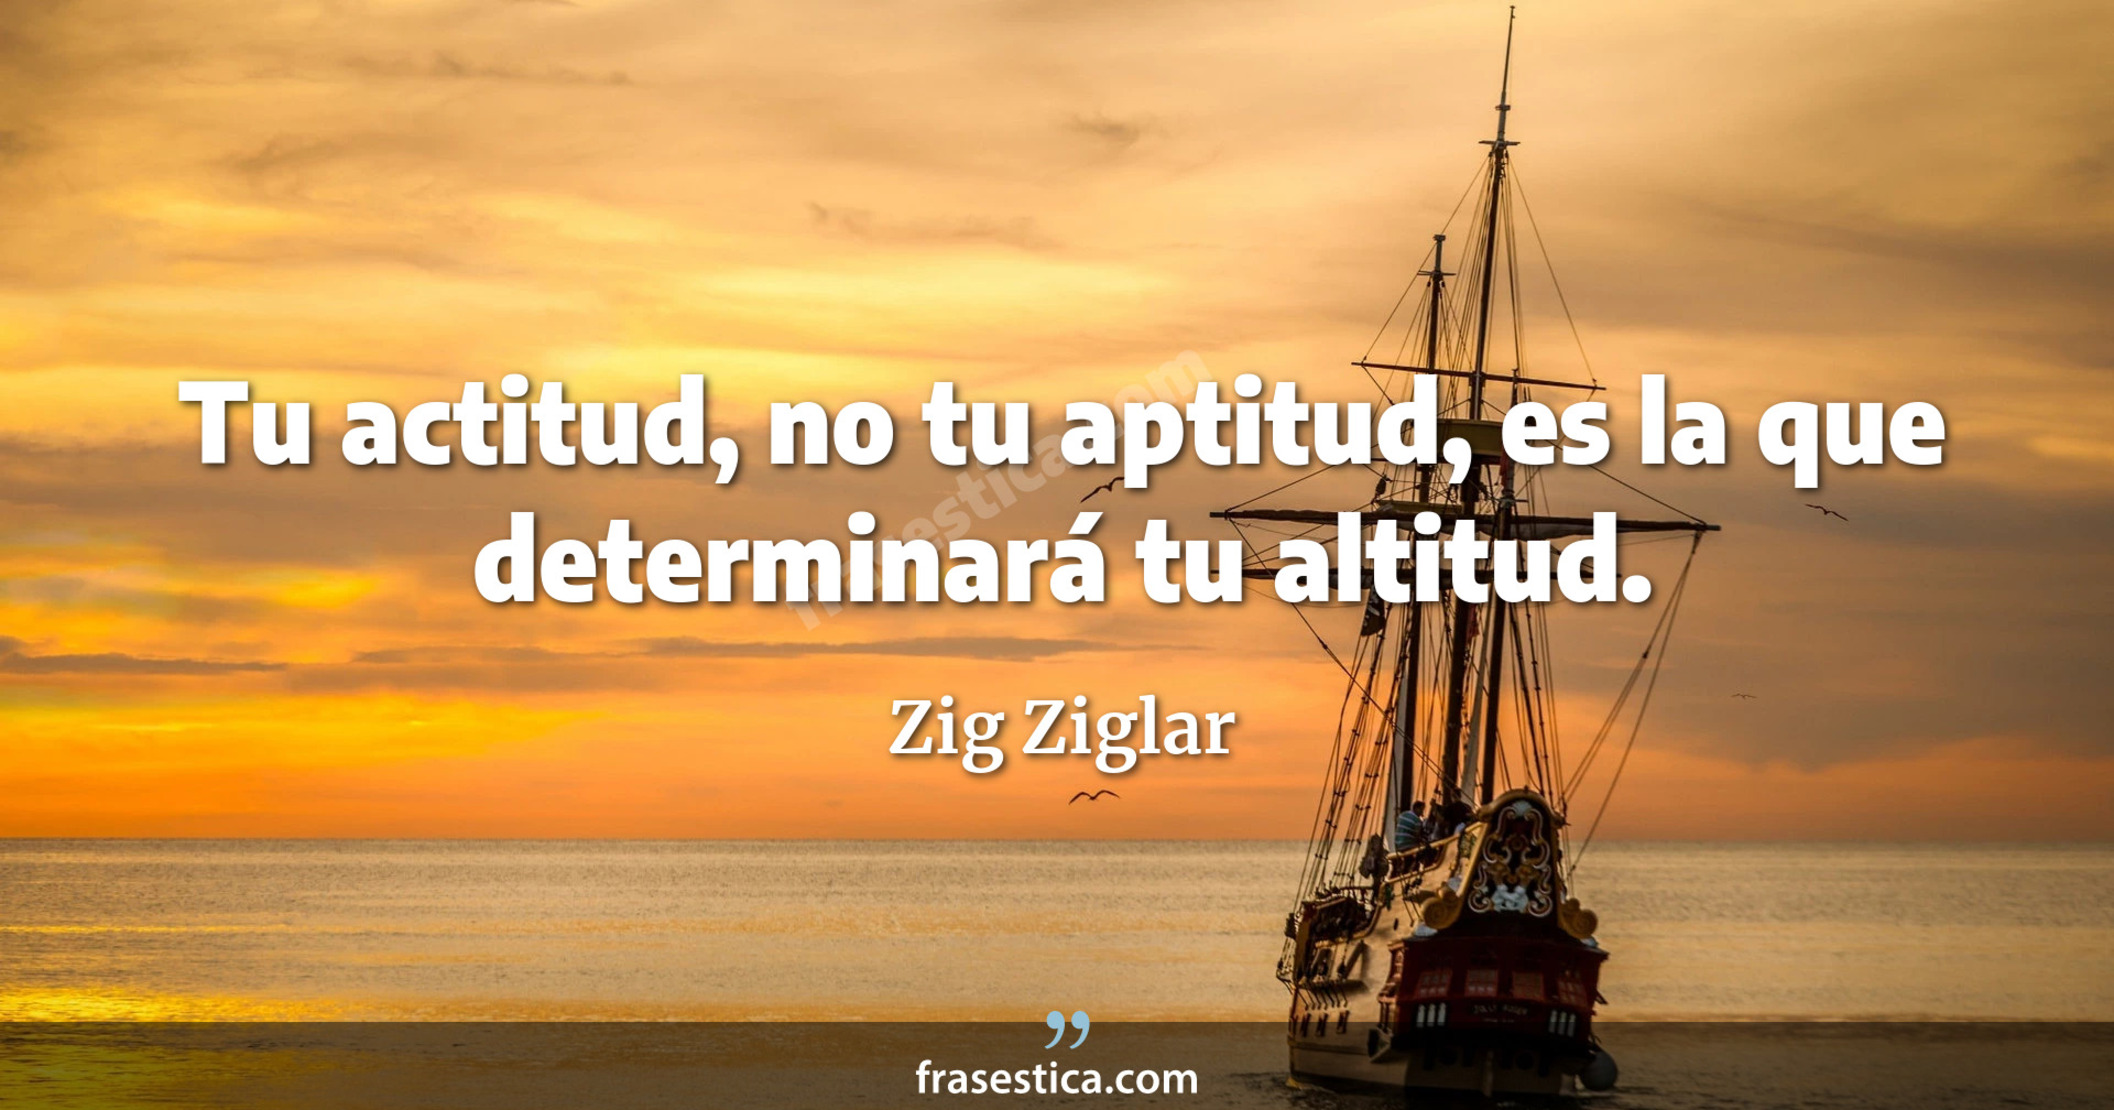 Tu actitud, no tu aptitud, es la que determinará tu altitud. - Zig Ziglar